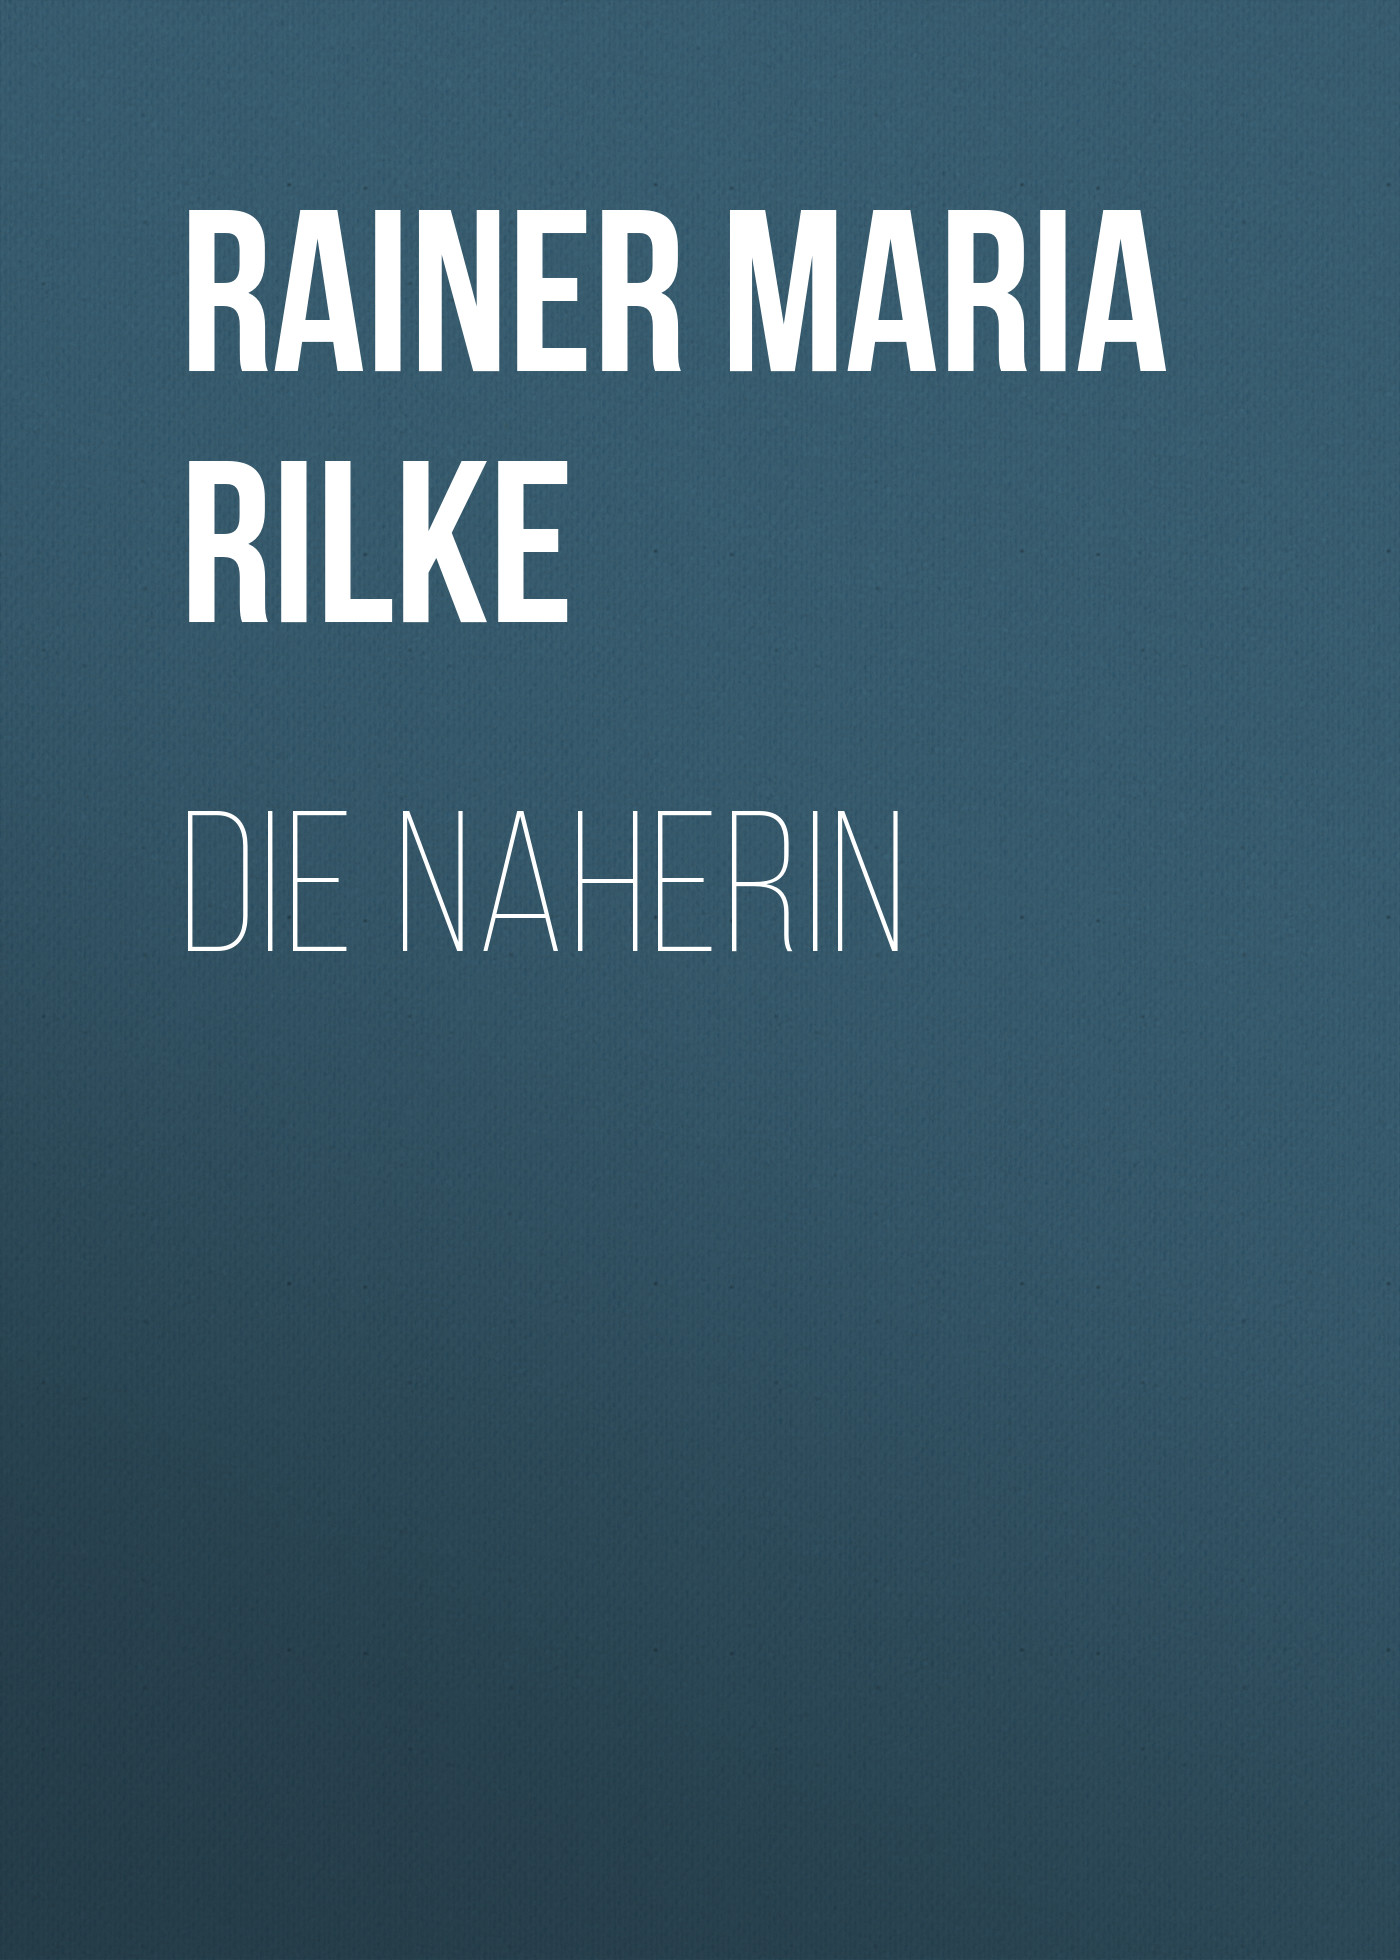 Книга Die Naherin из серии , созданная Rainer Rilke, может относится к жанру Зарубежная классика. Стоимость электронной книги Die Naherin с идентификатором 48634124 составляет 0 руб.